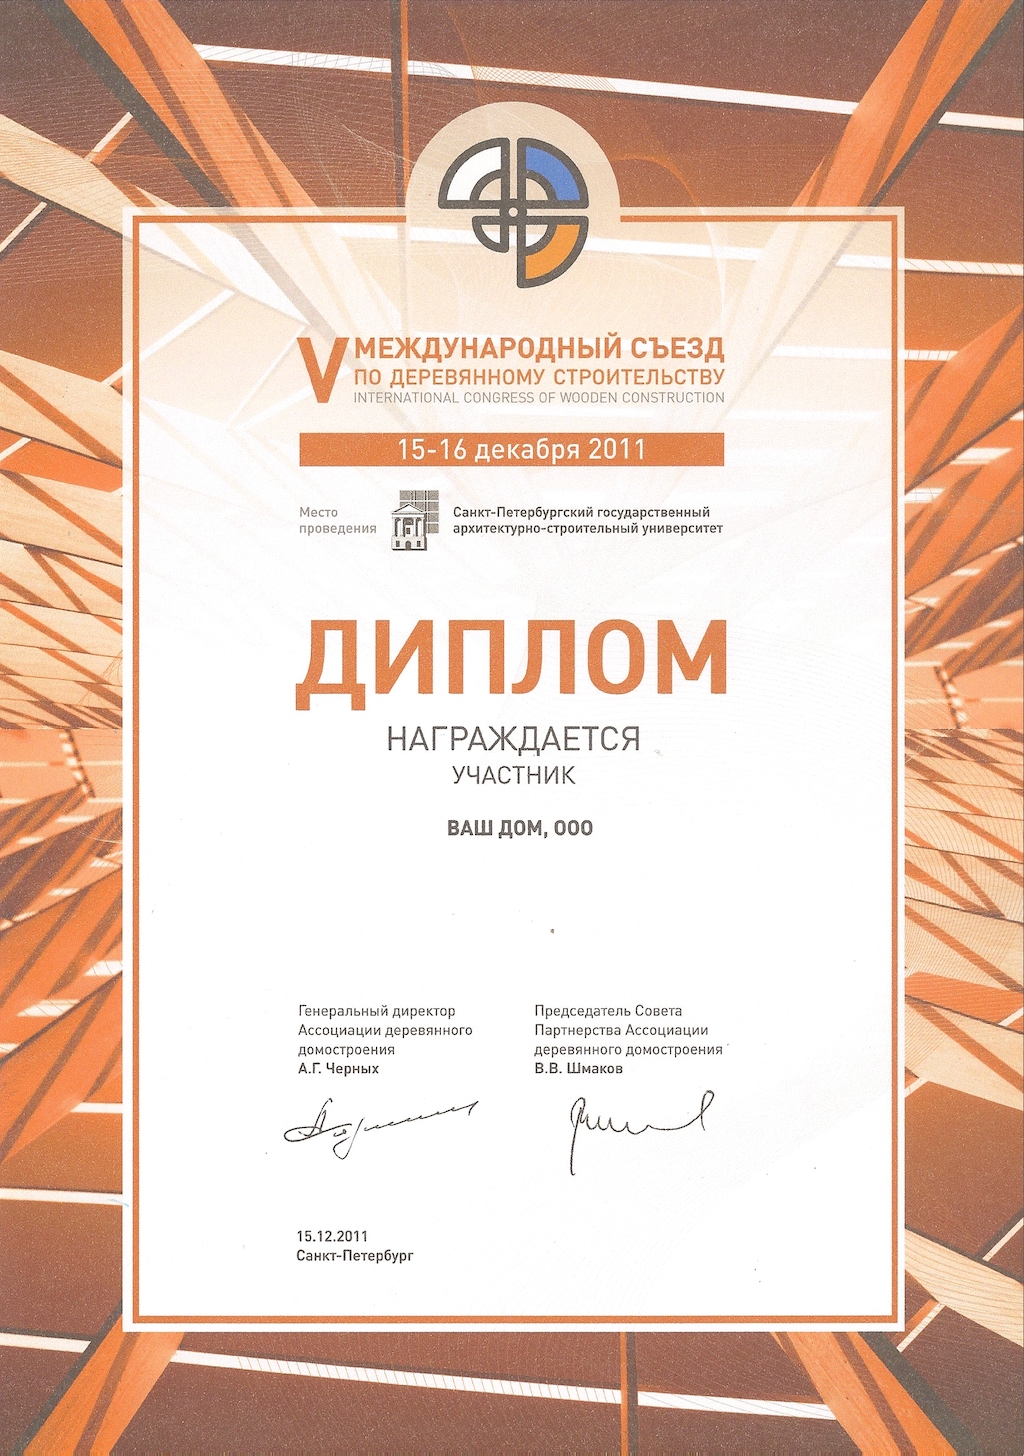 Сертификат международного съезда по деревянному строительству компании Ваш Дом